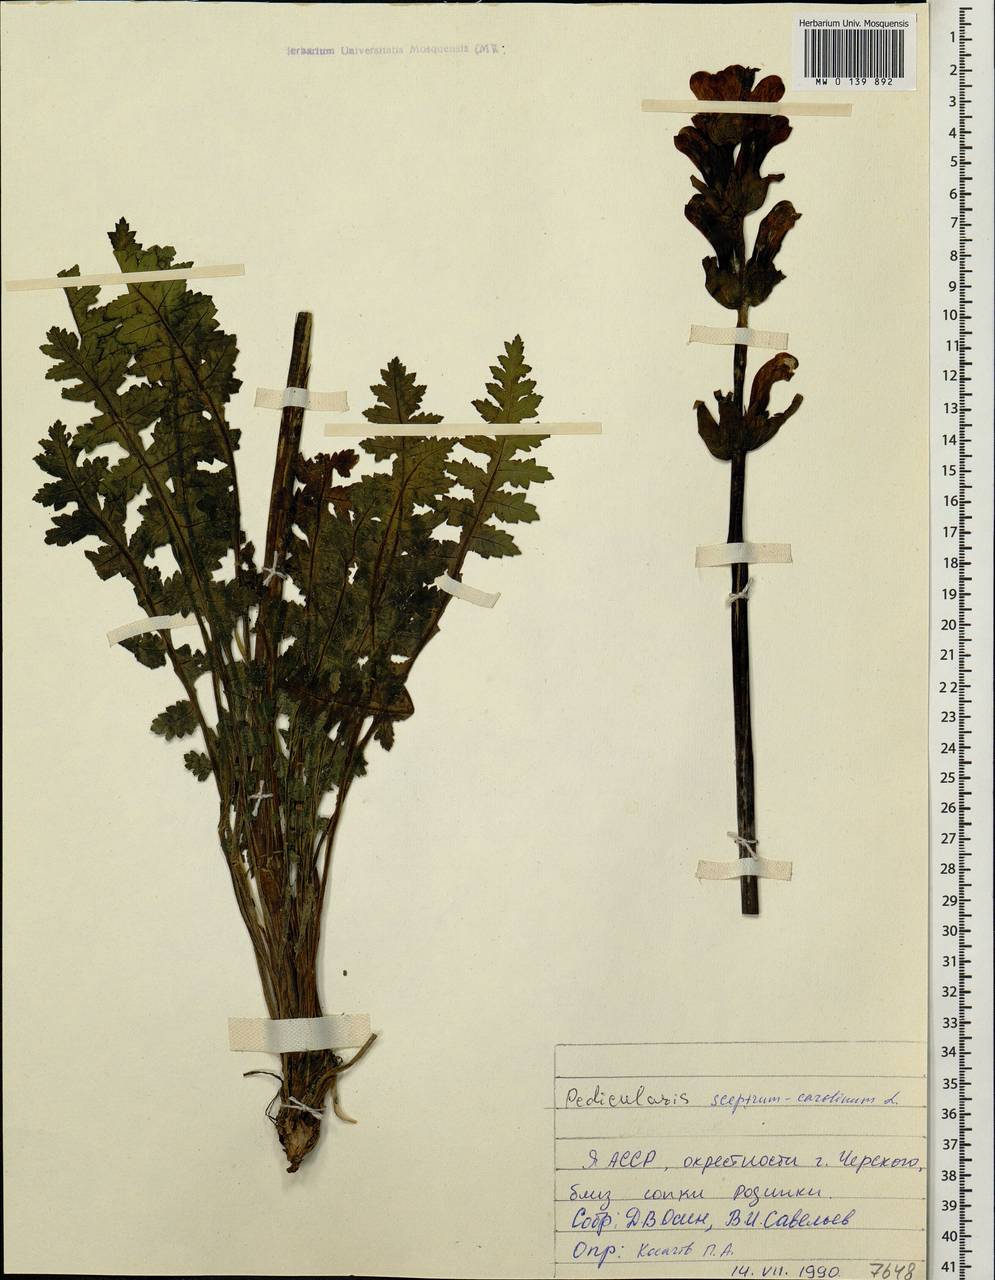 Pedicularis sceptrum-carolinum, Siberia, Yakutia (S5) (Russia)